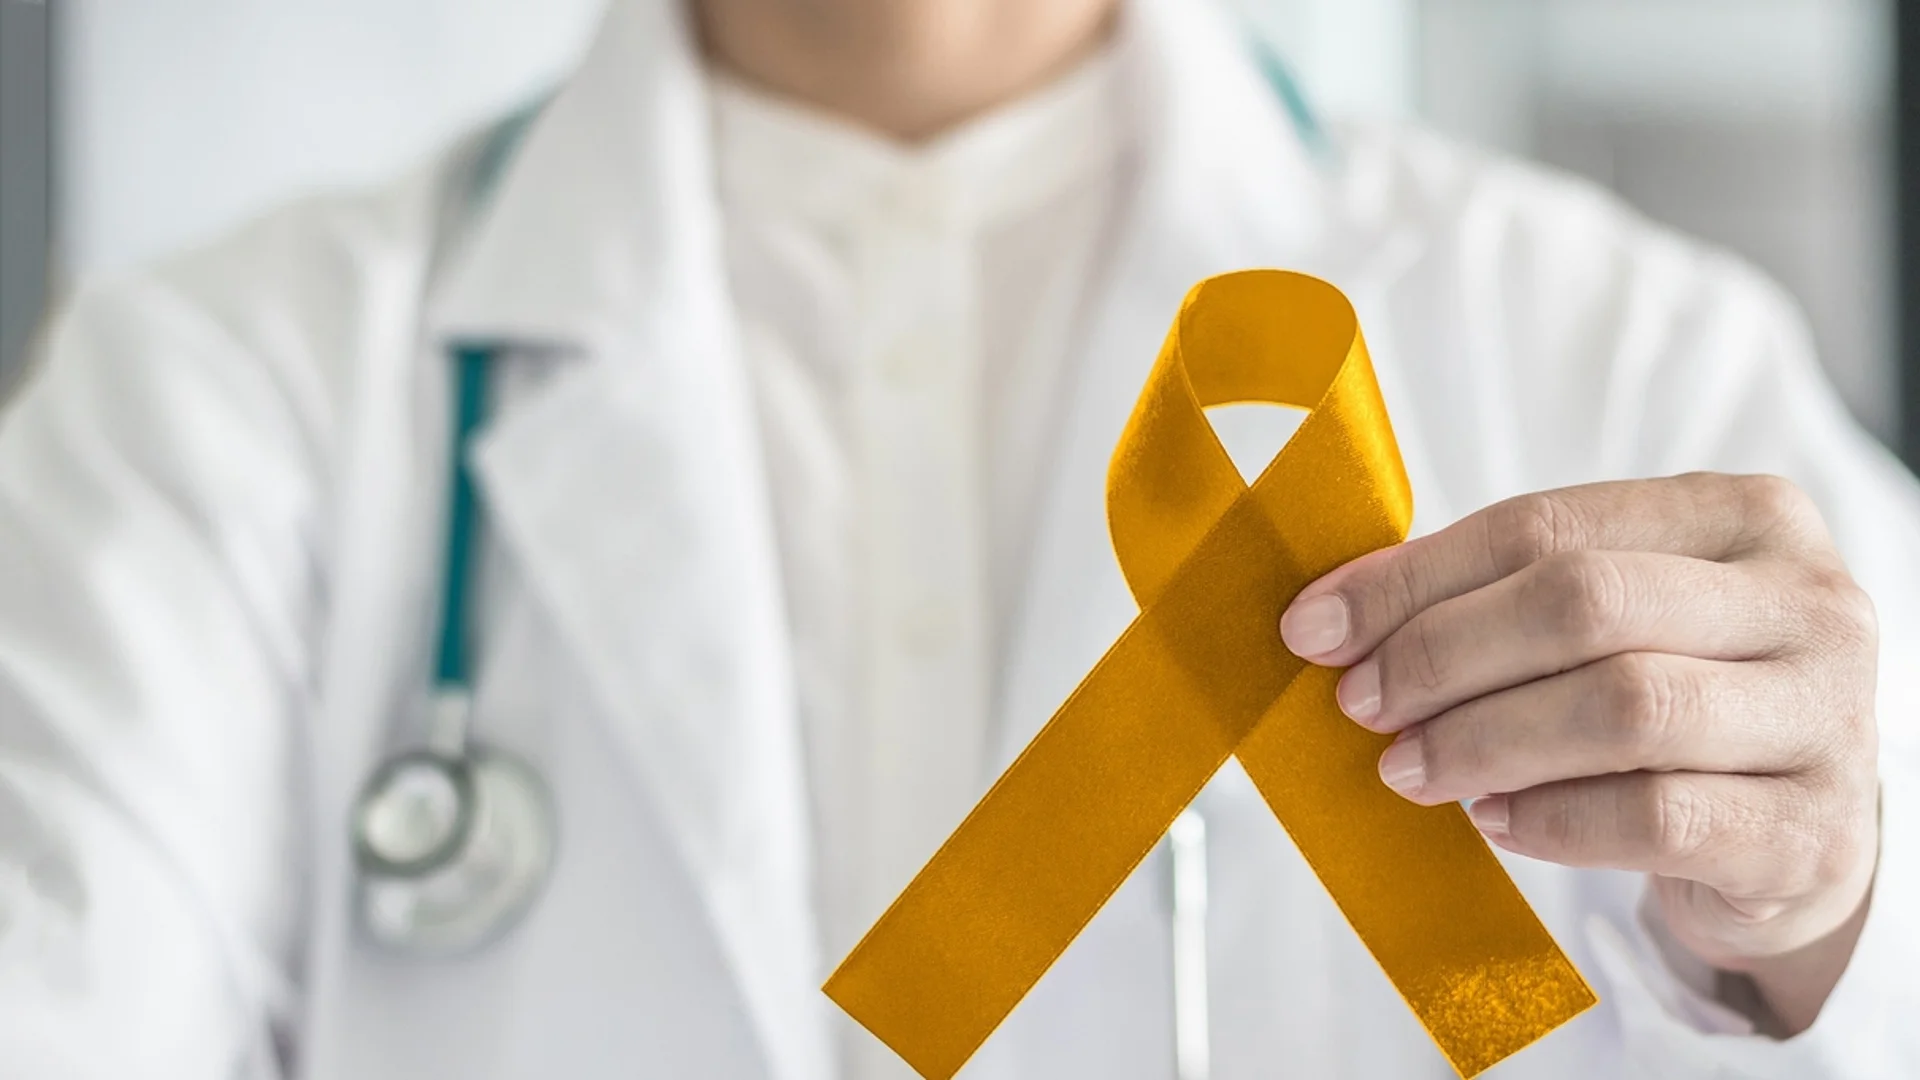 Все повече българи с рак търсят лечение в чужбина: Проучване